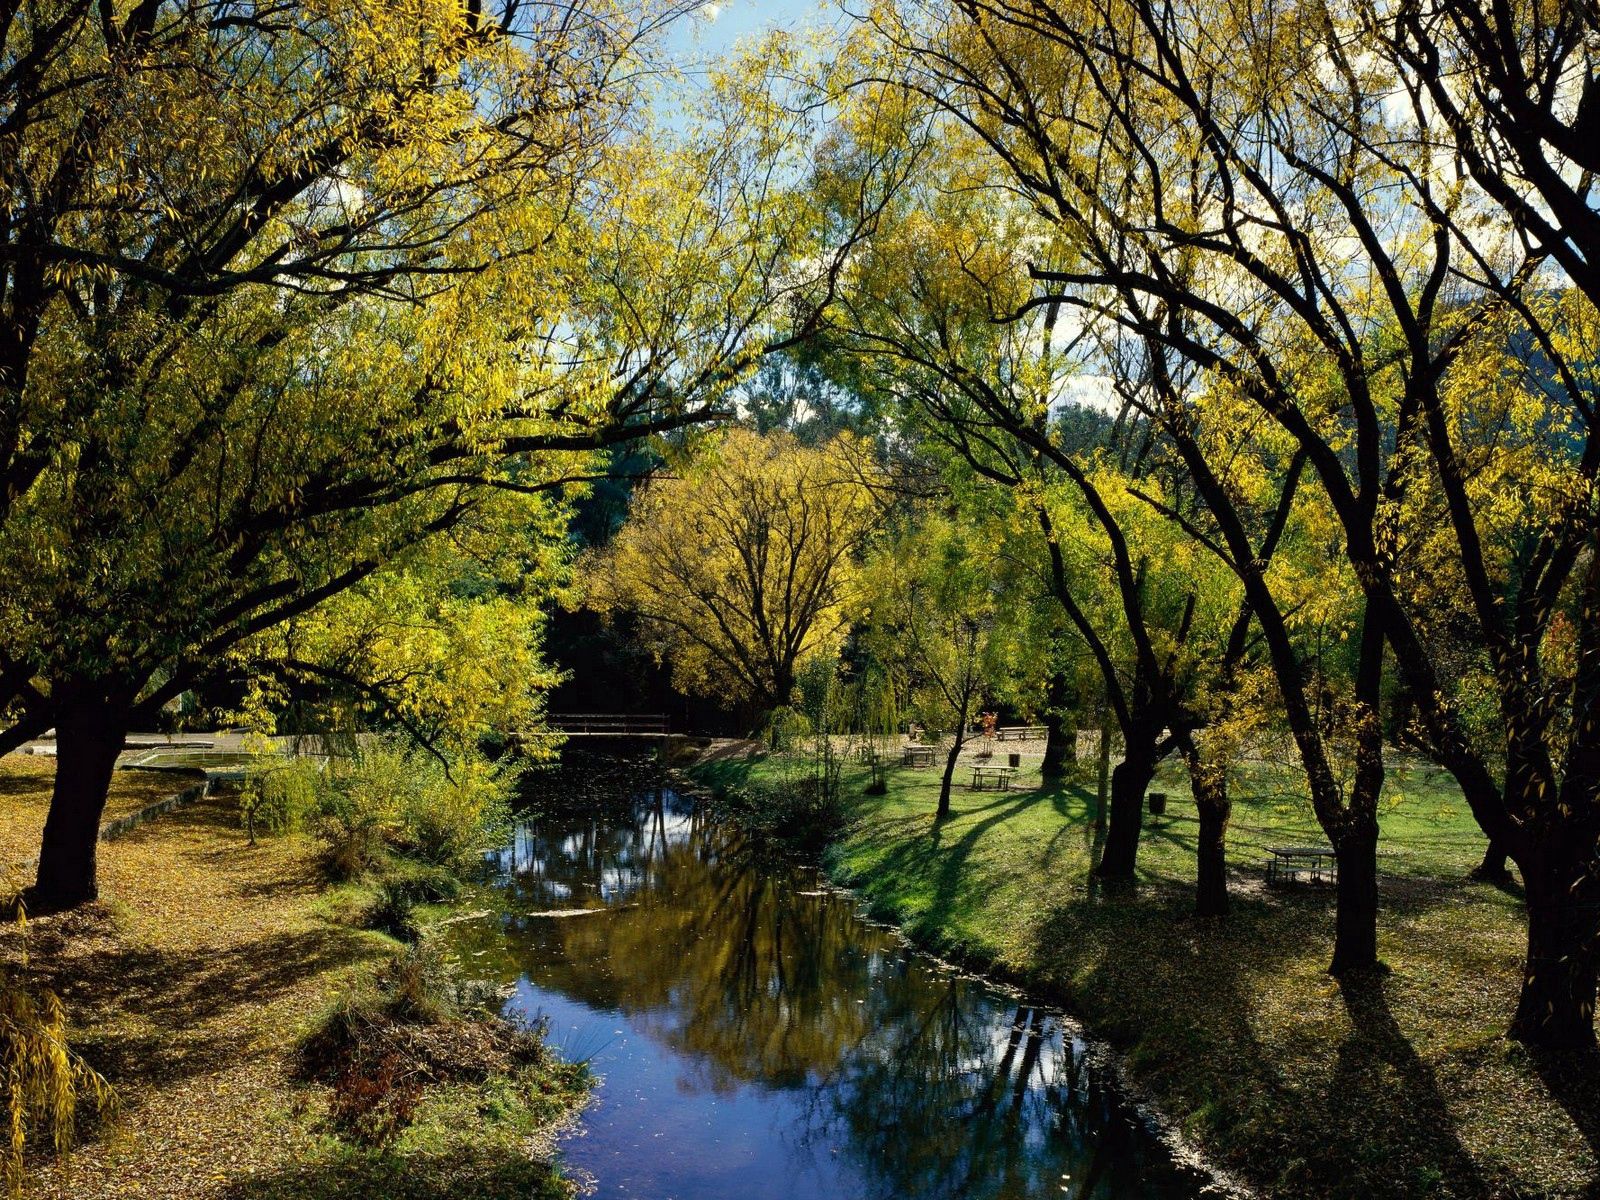 rivers, nature, trees, autumn, park, relaxation, rest, australia HD for desktop 1080p